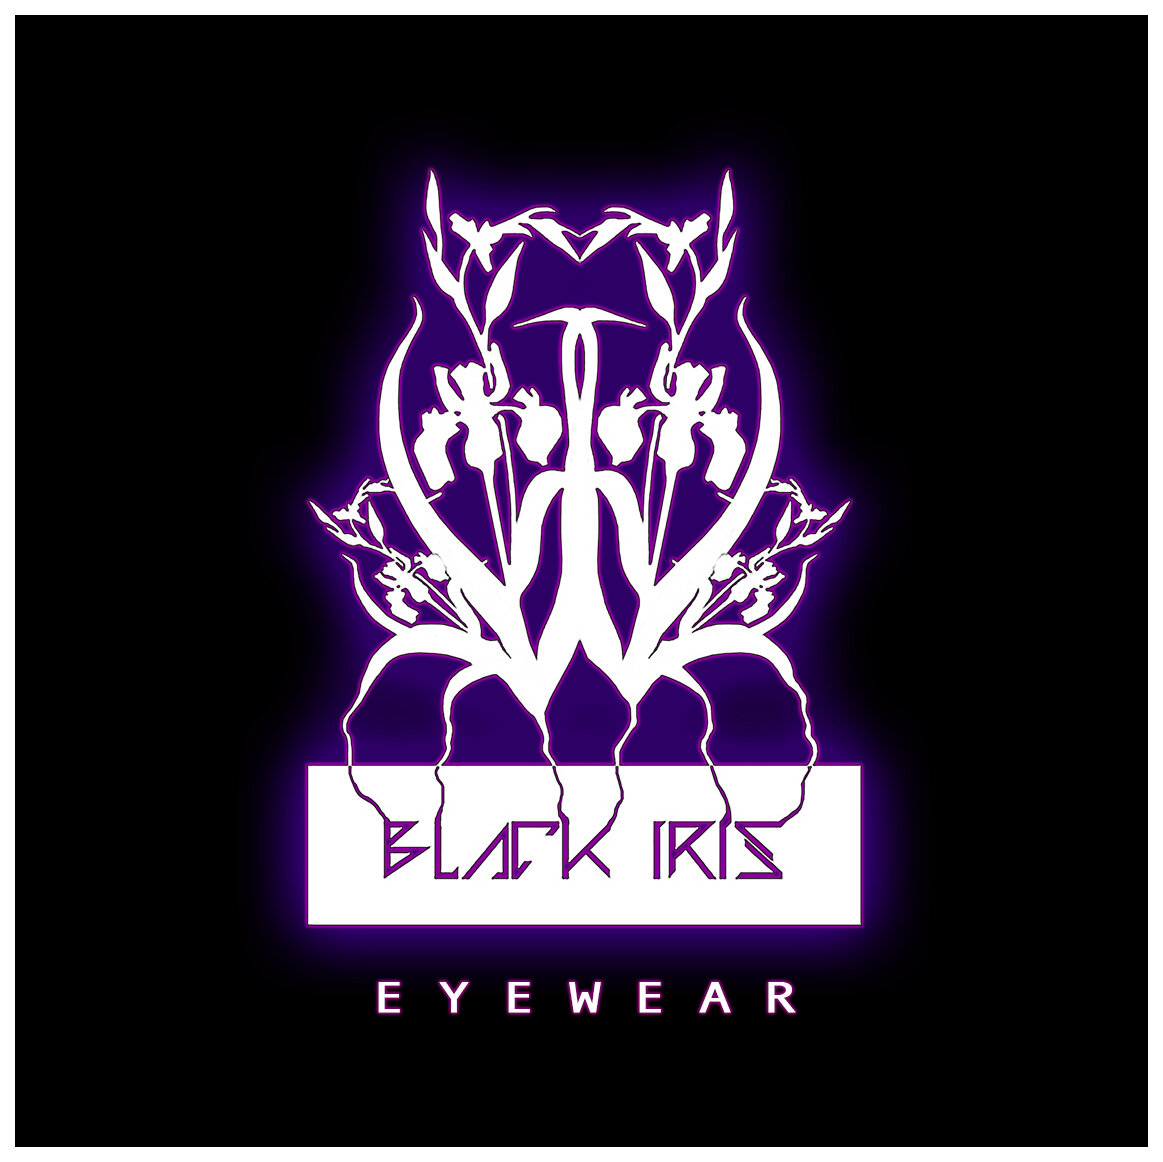  Black Iris